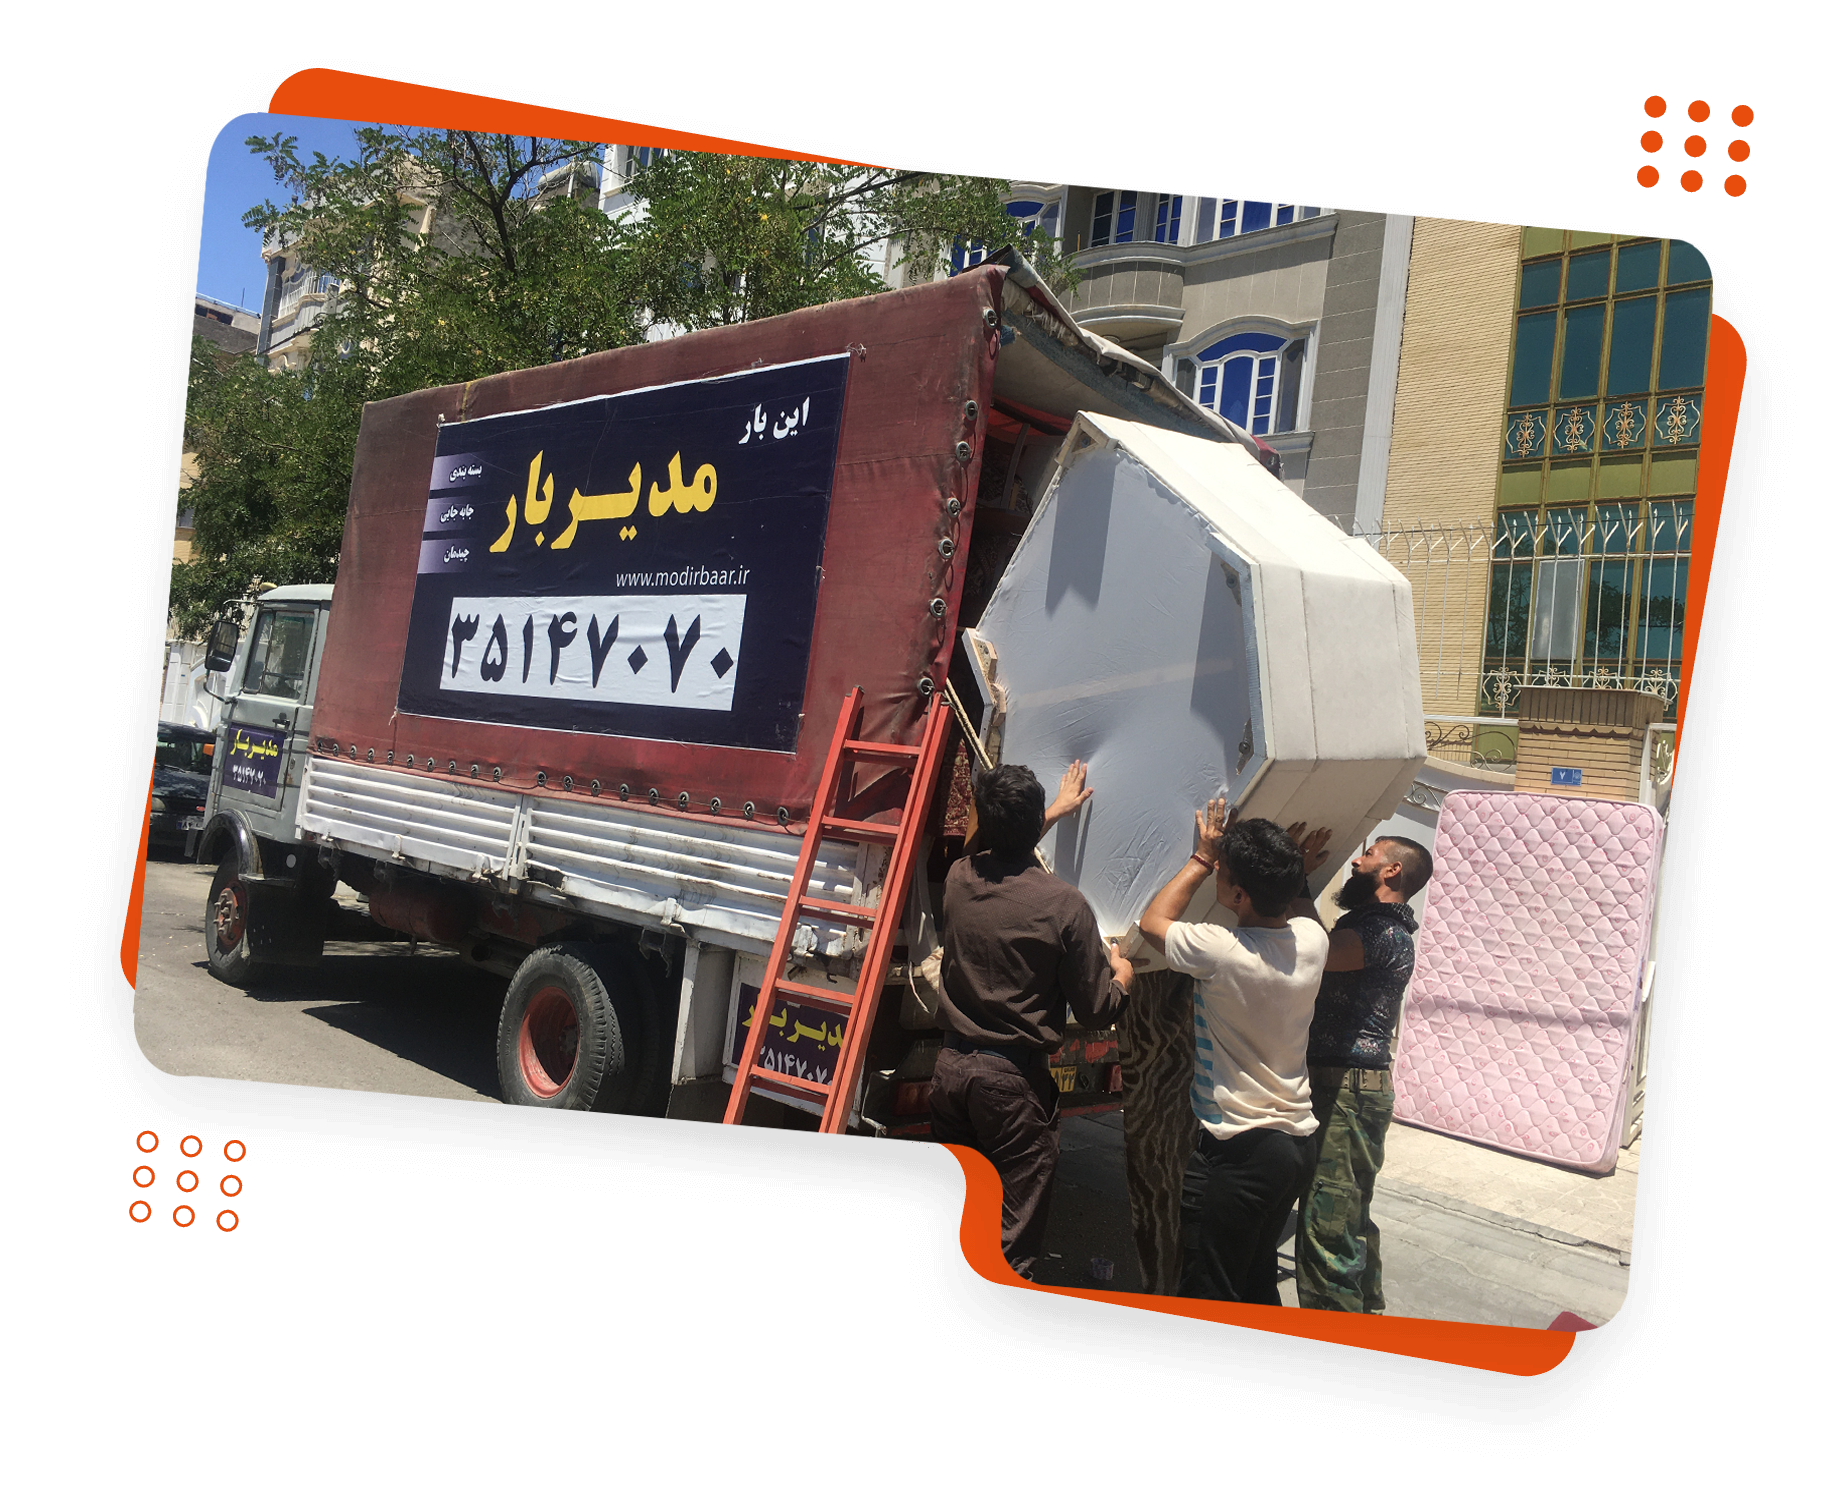 باربری مدیربار در خیابان خلج مشهد